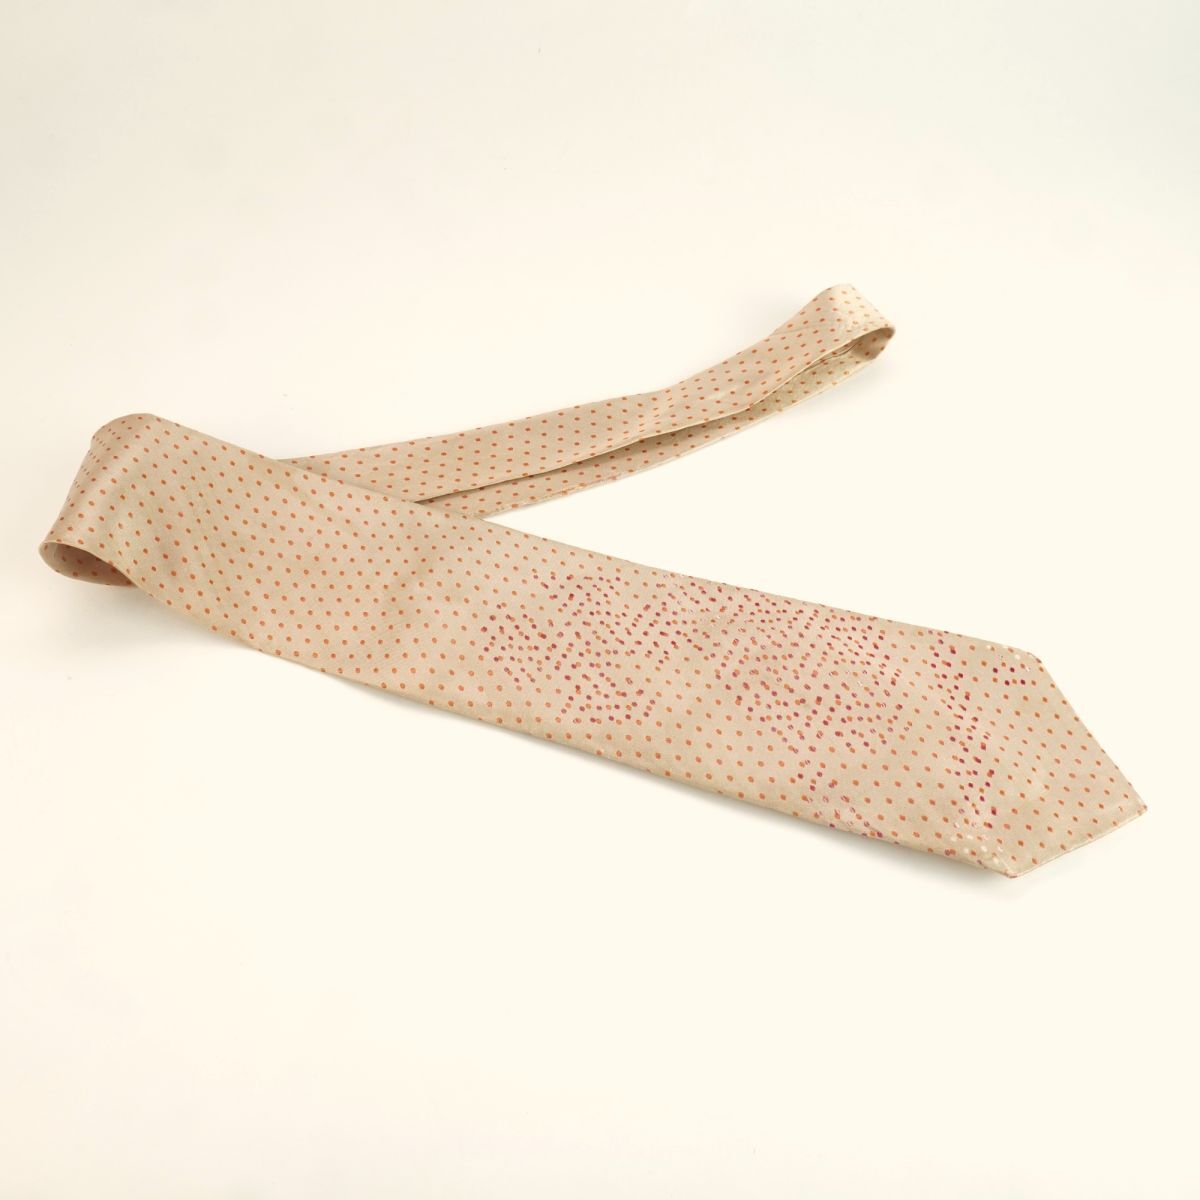 Vivienne Westwood Vivienne * Westwood галстук Италия производства общий рисунок точка рисунок шелк 100% розовый бежевый @JG88